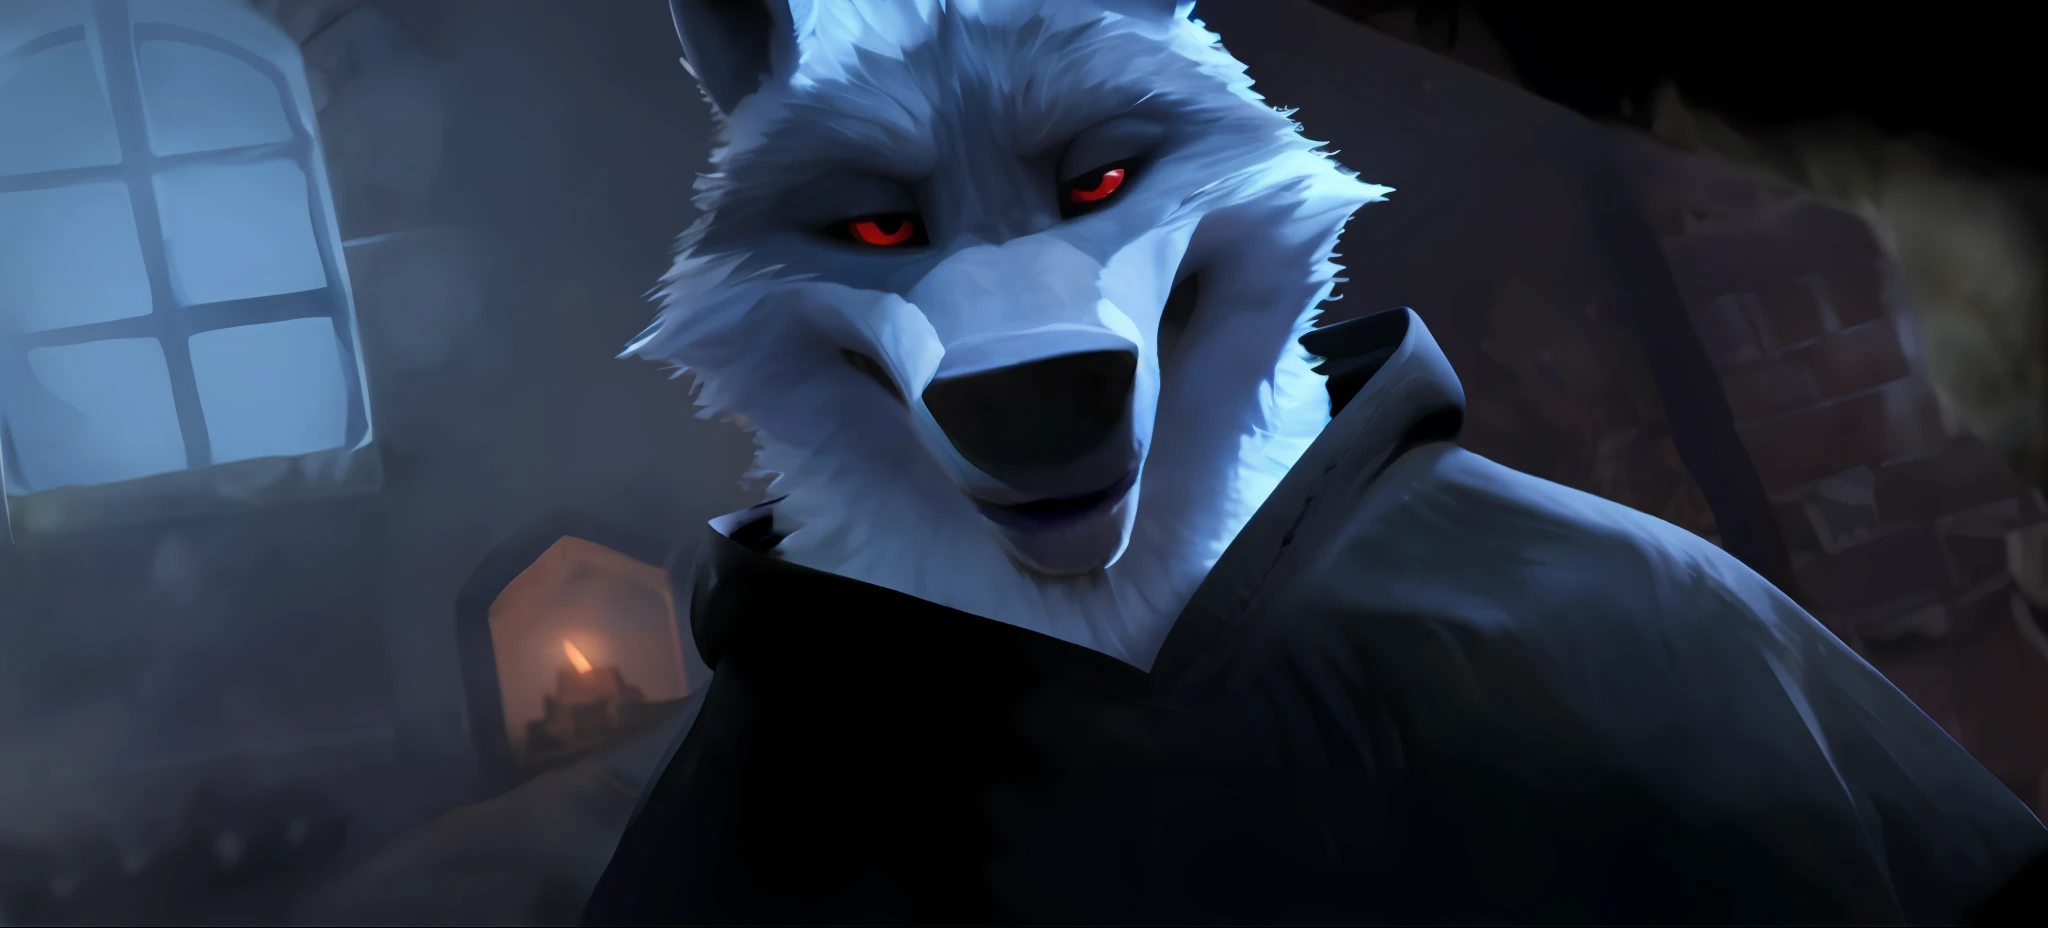 Death Wolf de uma forma original e única, quase o mesmo que o filme Gato de Botas 2, O último desejo feito com a ajuda do Unreal Engine 9, olhando para o espectador muito sério e sem paciência, olhos vermelhos muito lindos;